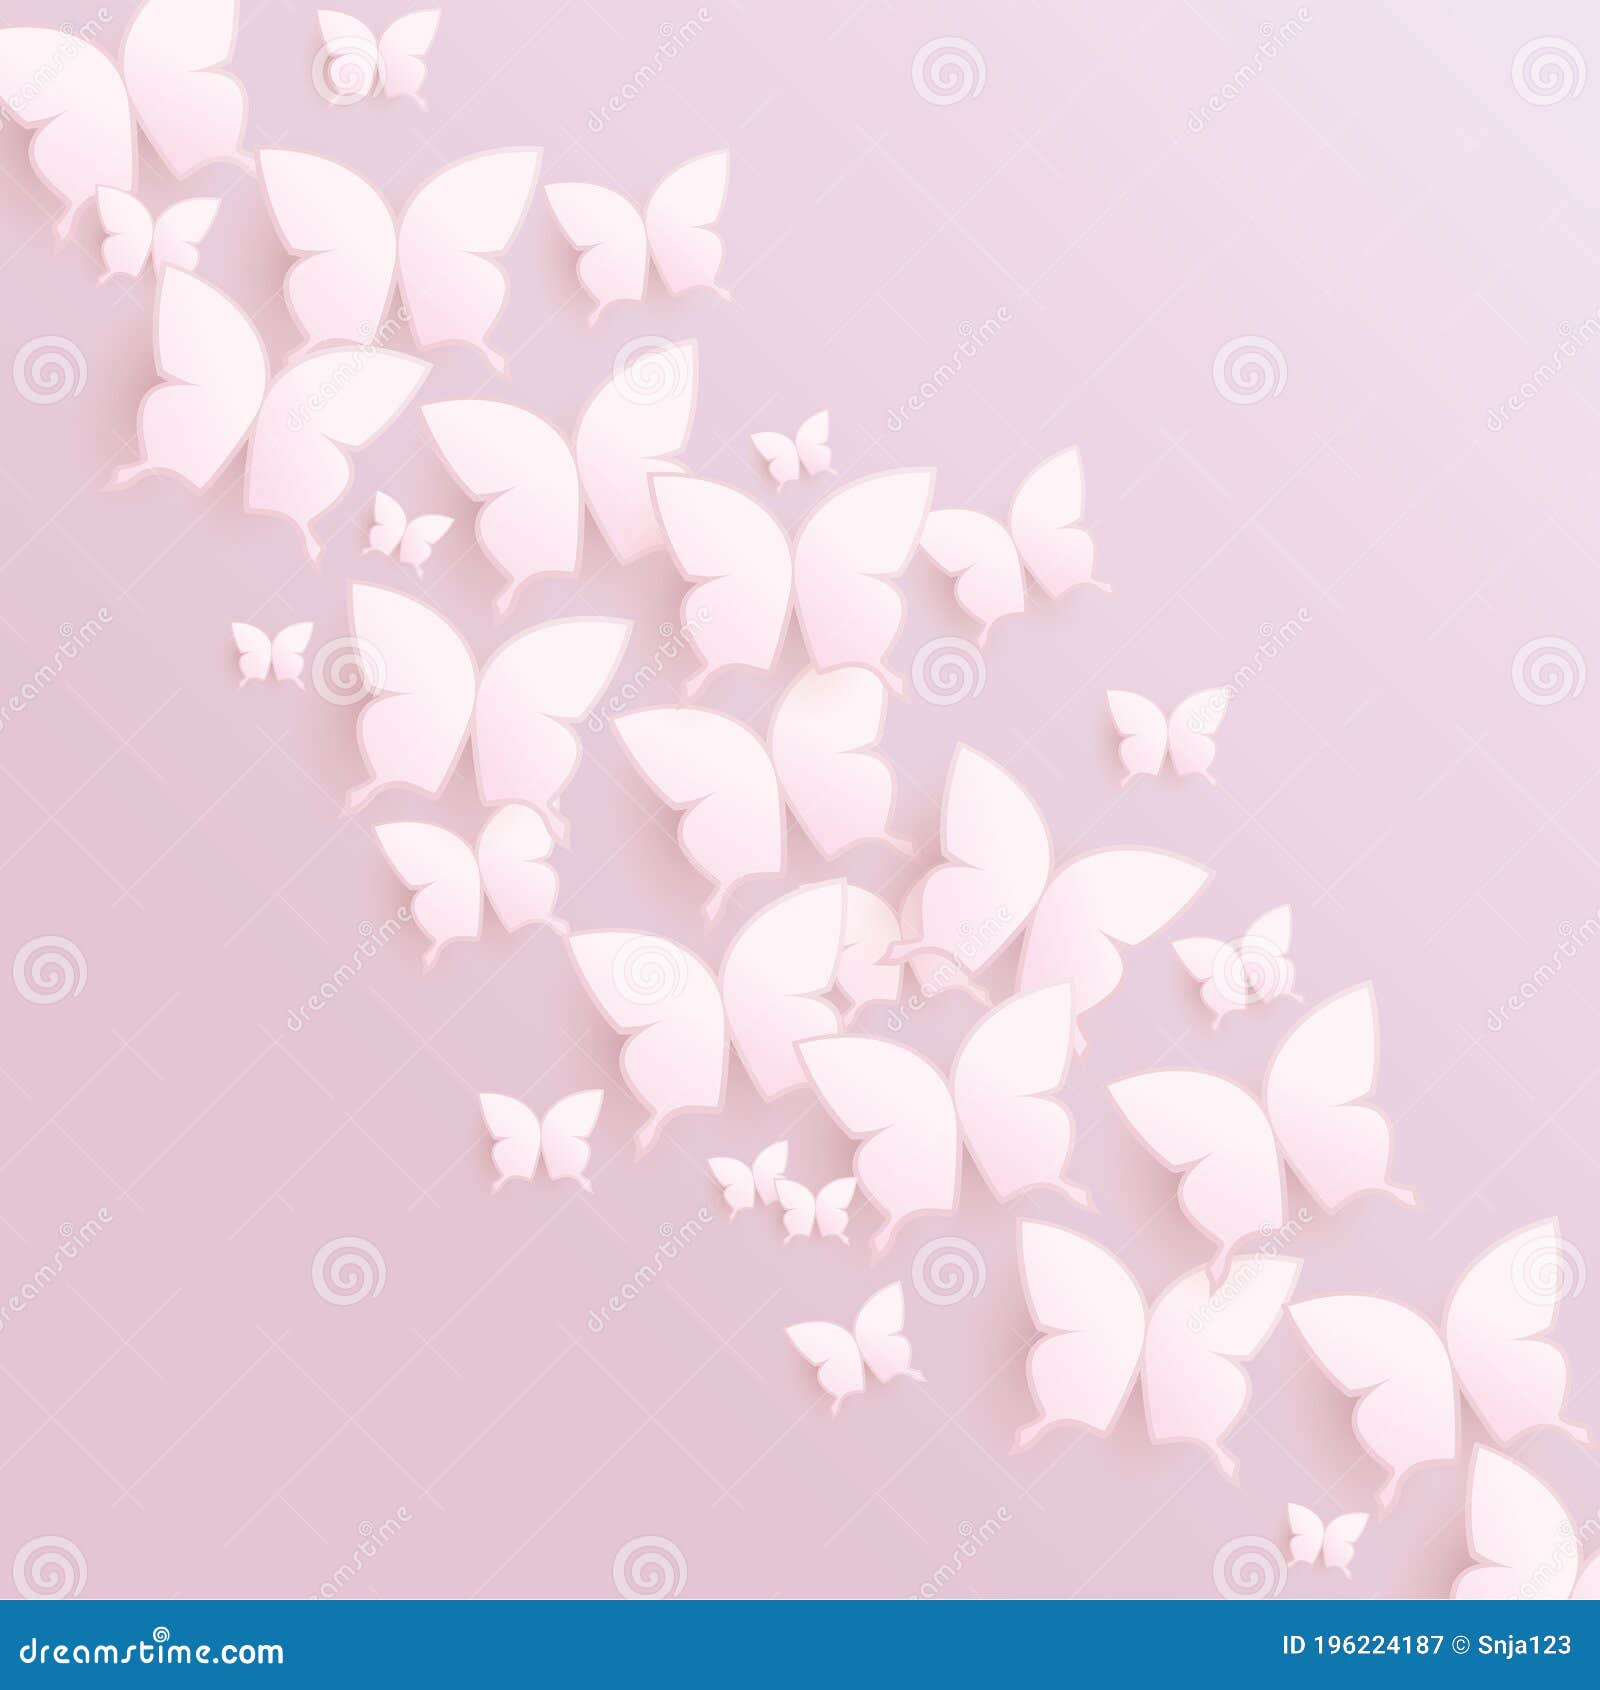 Hình nền vector thiết kế với bướm trắng trên nền hồng nhạt sẽ đem lại cho bạn một cảm giác thanh lịch và tinh tế. Với hình ảnh bướm trắng bay lượn giữa nền hồng nhạt, bạn sẽ có được sự tinh tế và thanh lịch trong không gian trang trí của mình.